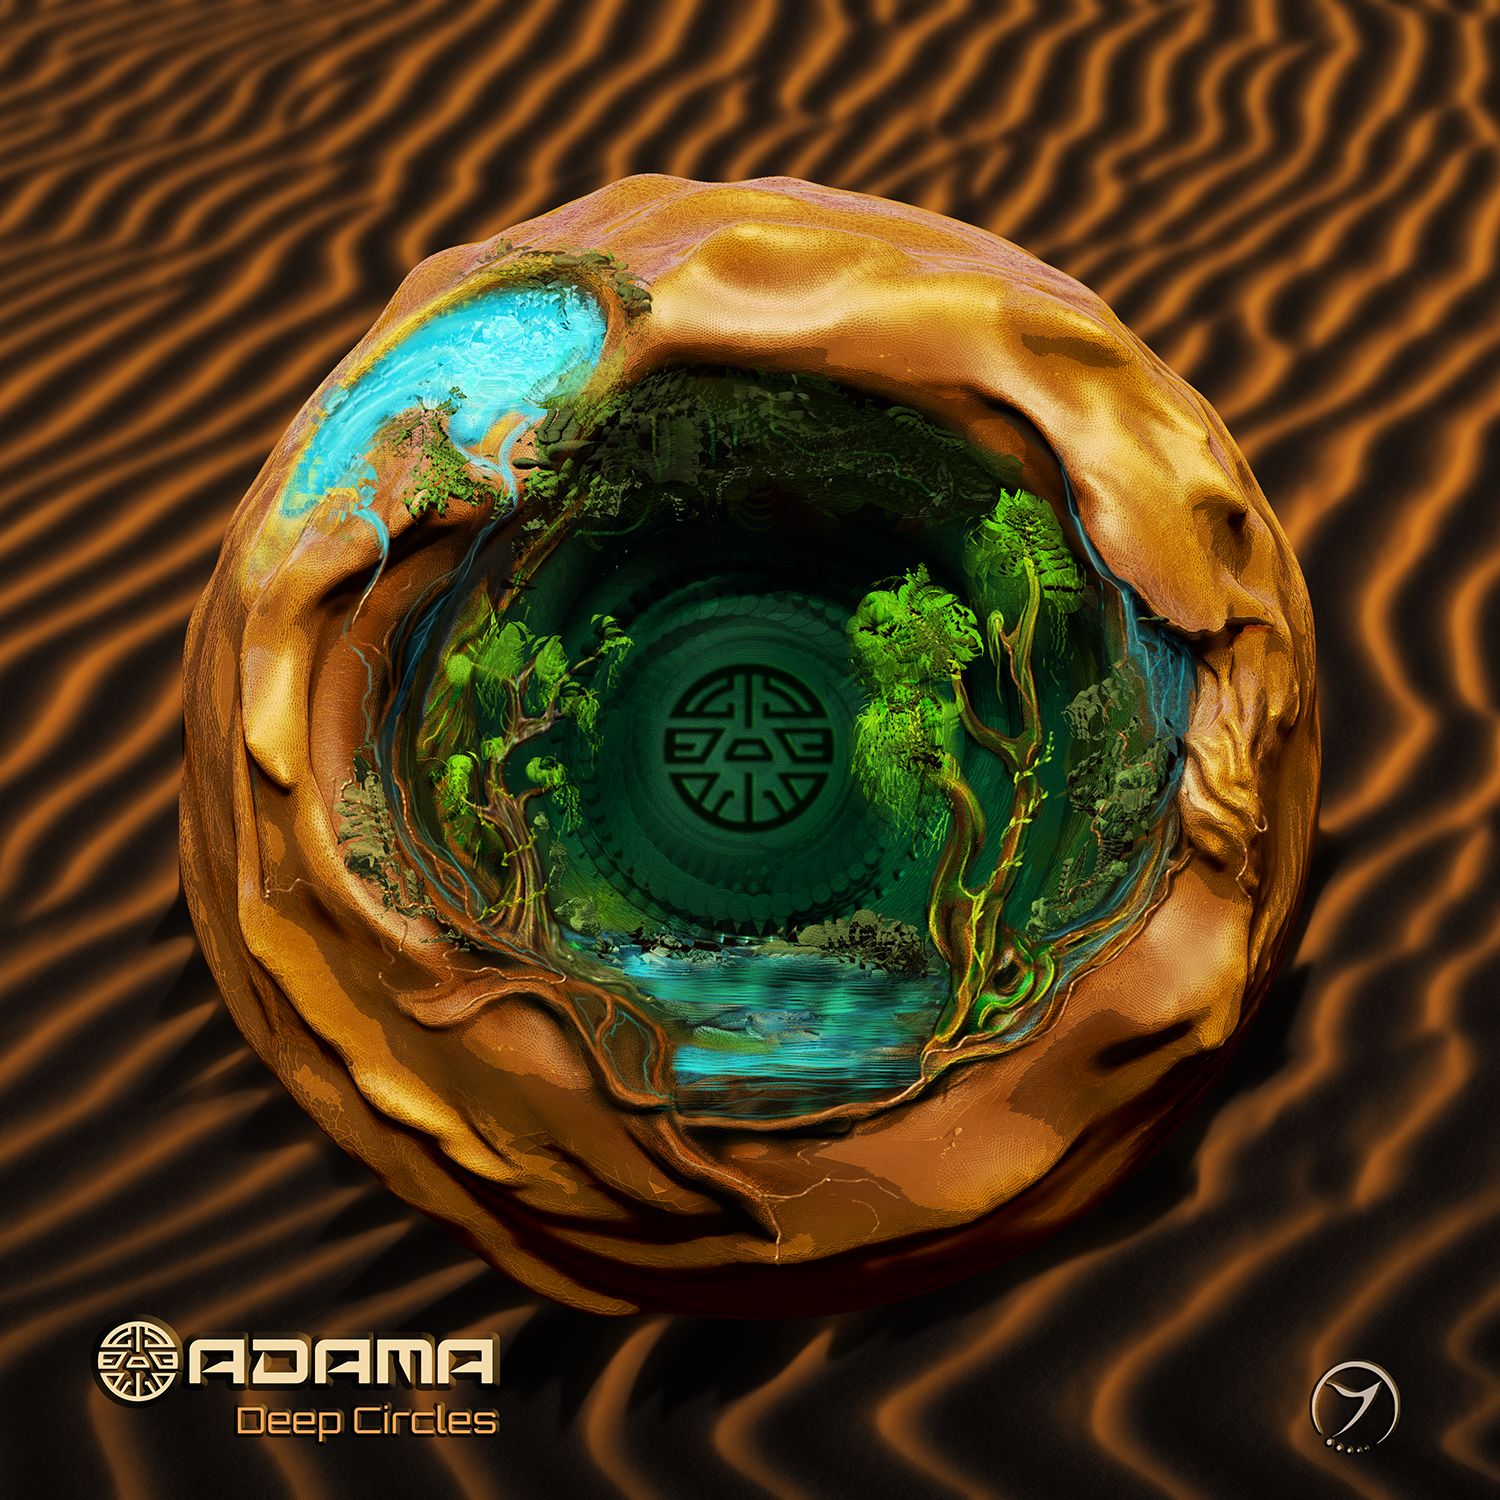 הורד Adama - Deep Circles EP